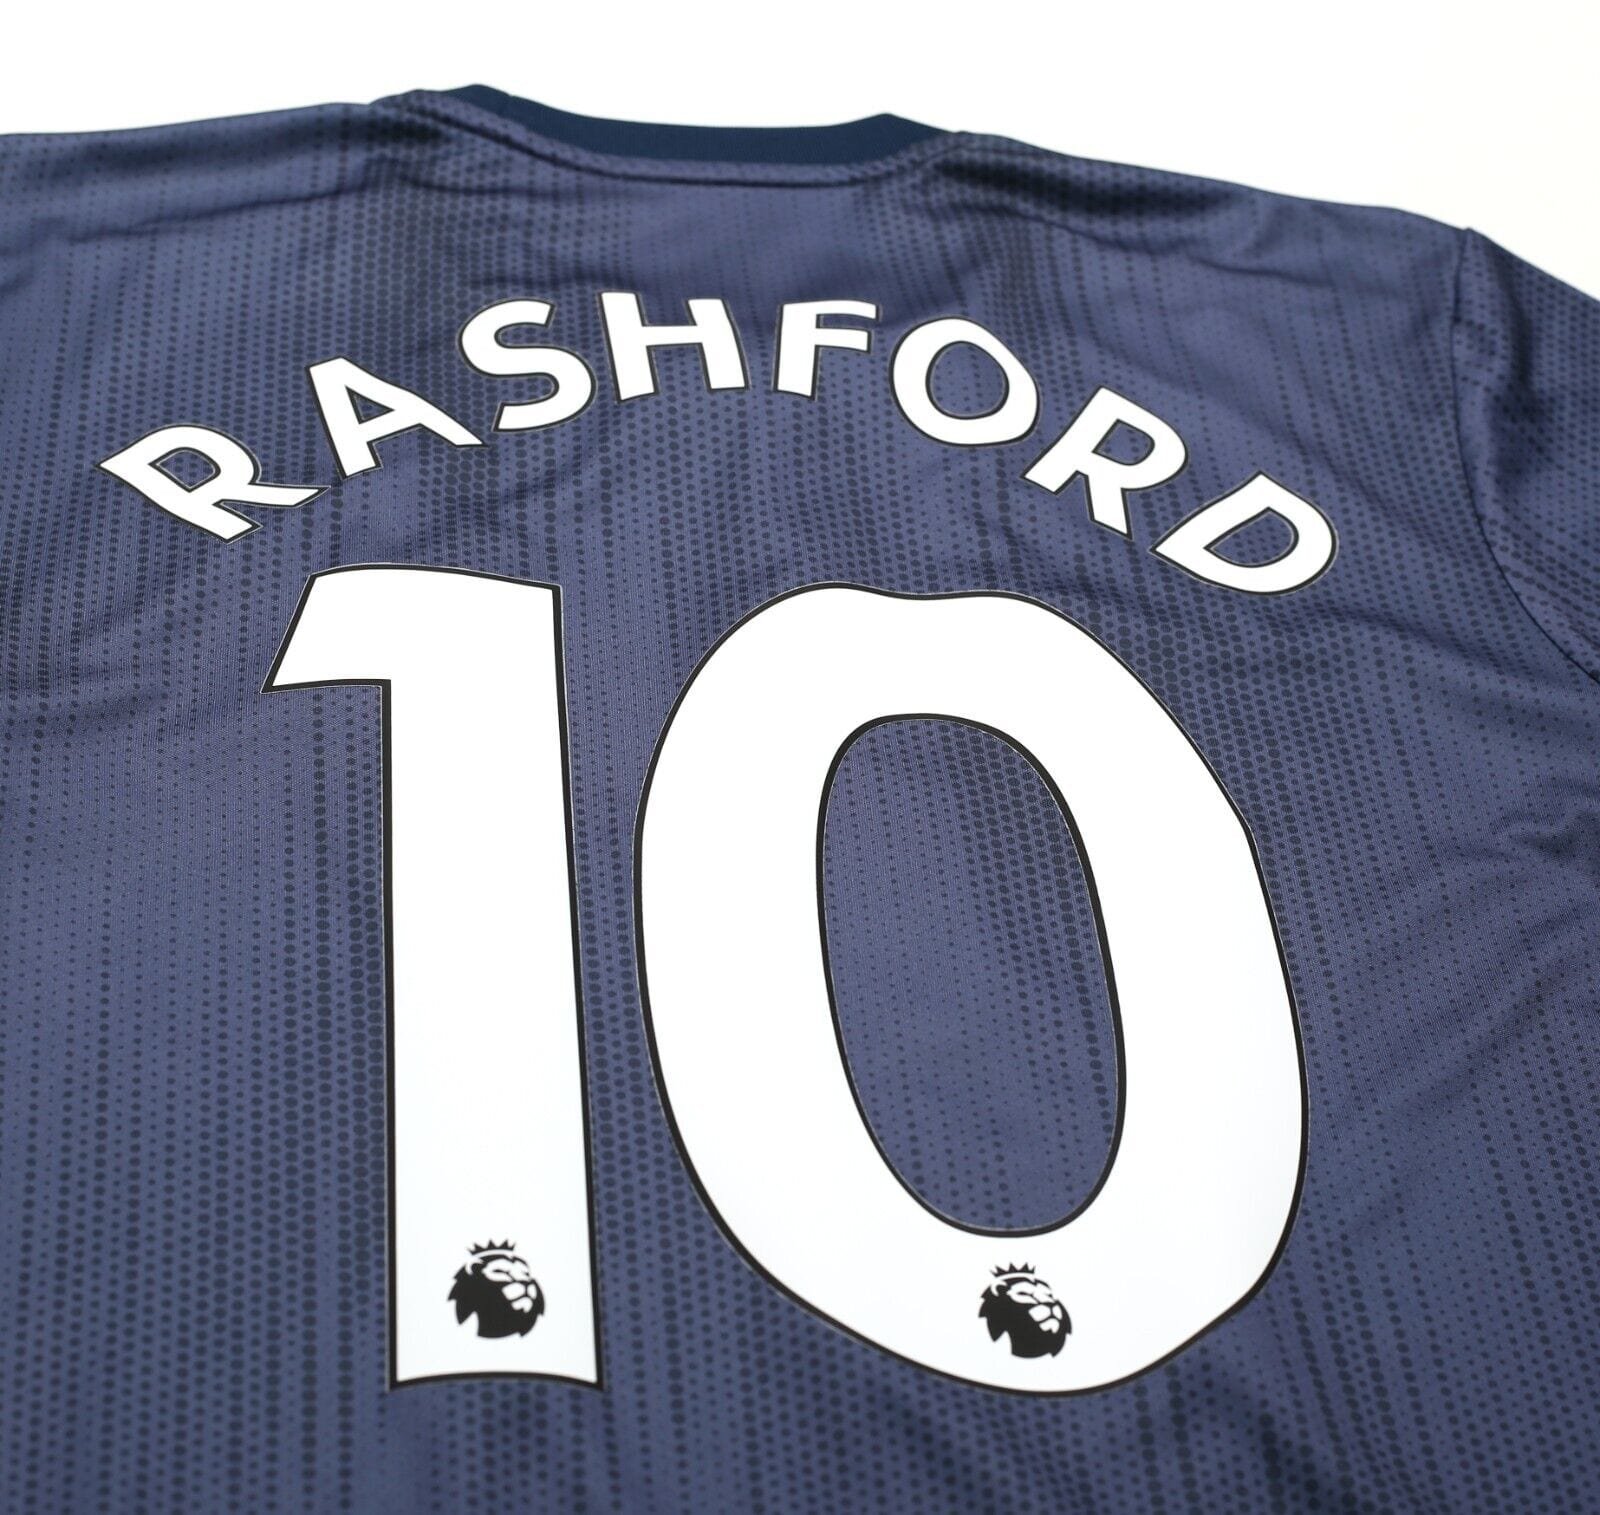 2018/19 RASHFORD #10 Manchester United Vintage adidas Third Football Shirt (M)